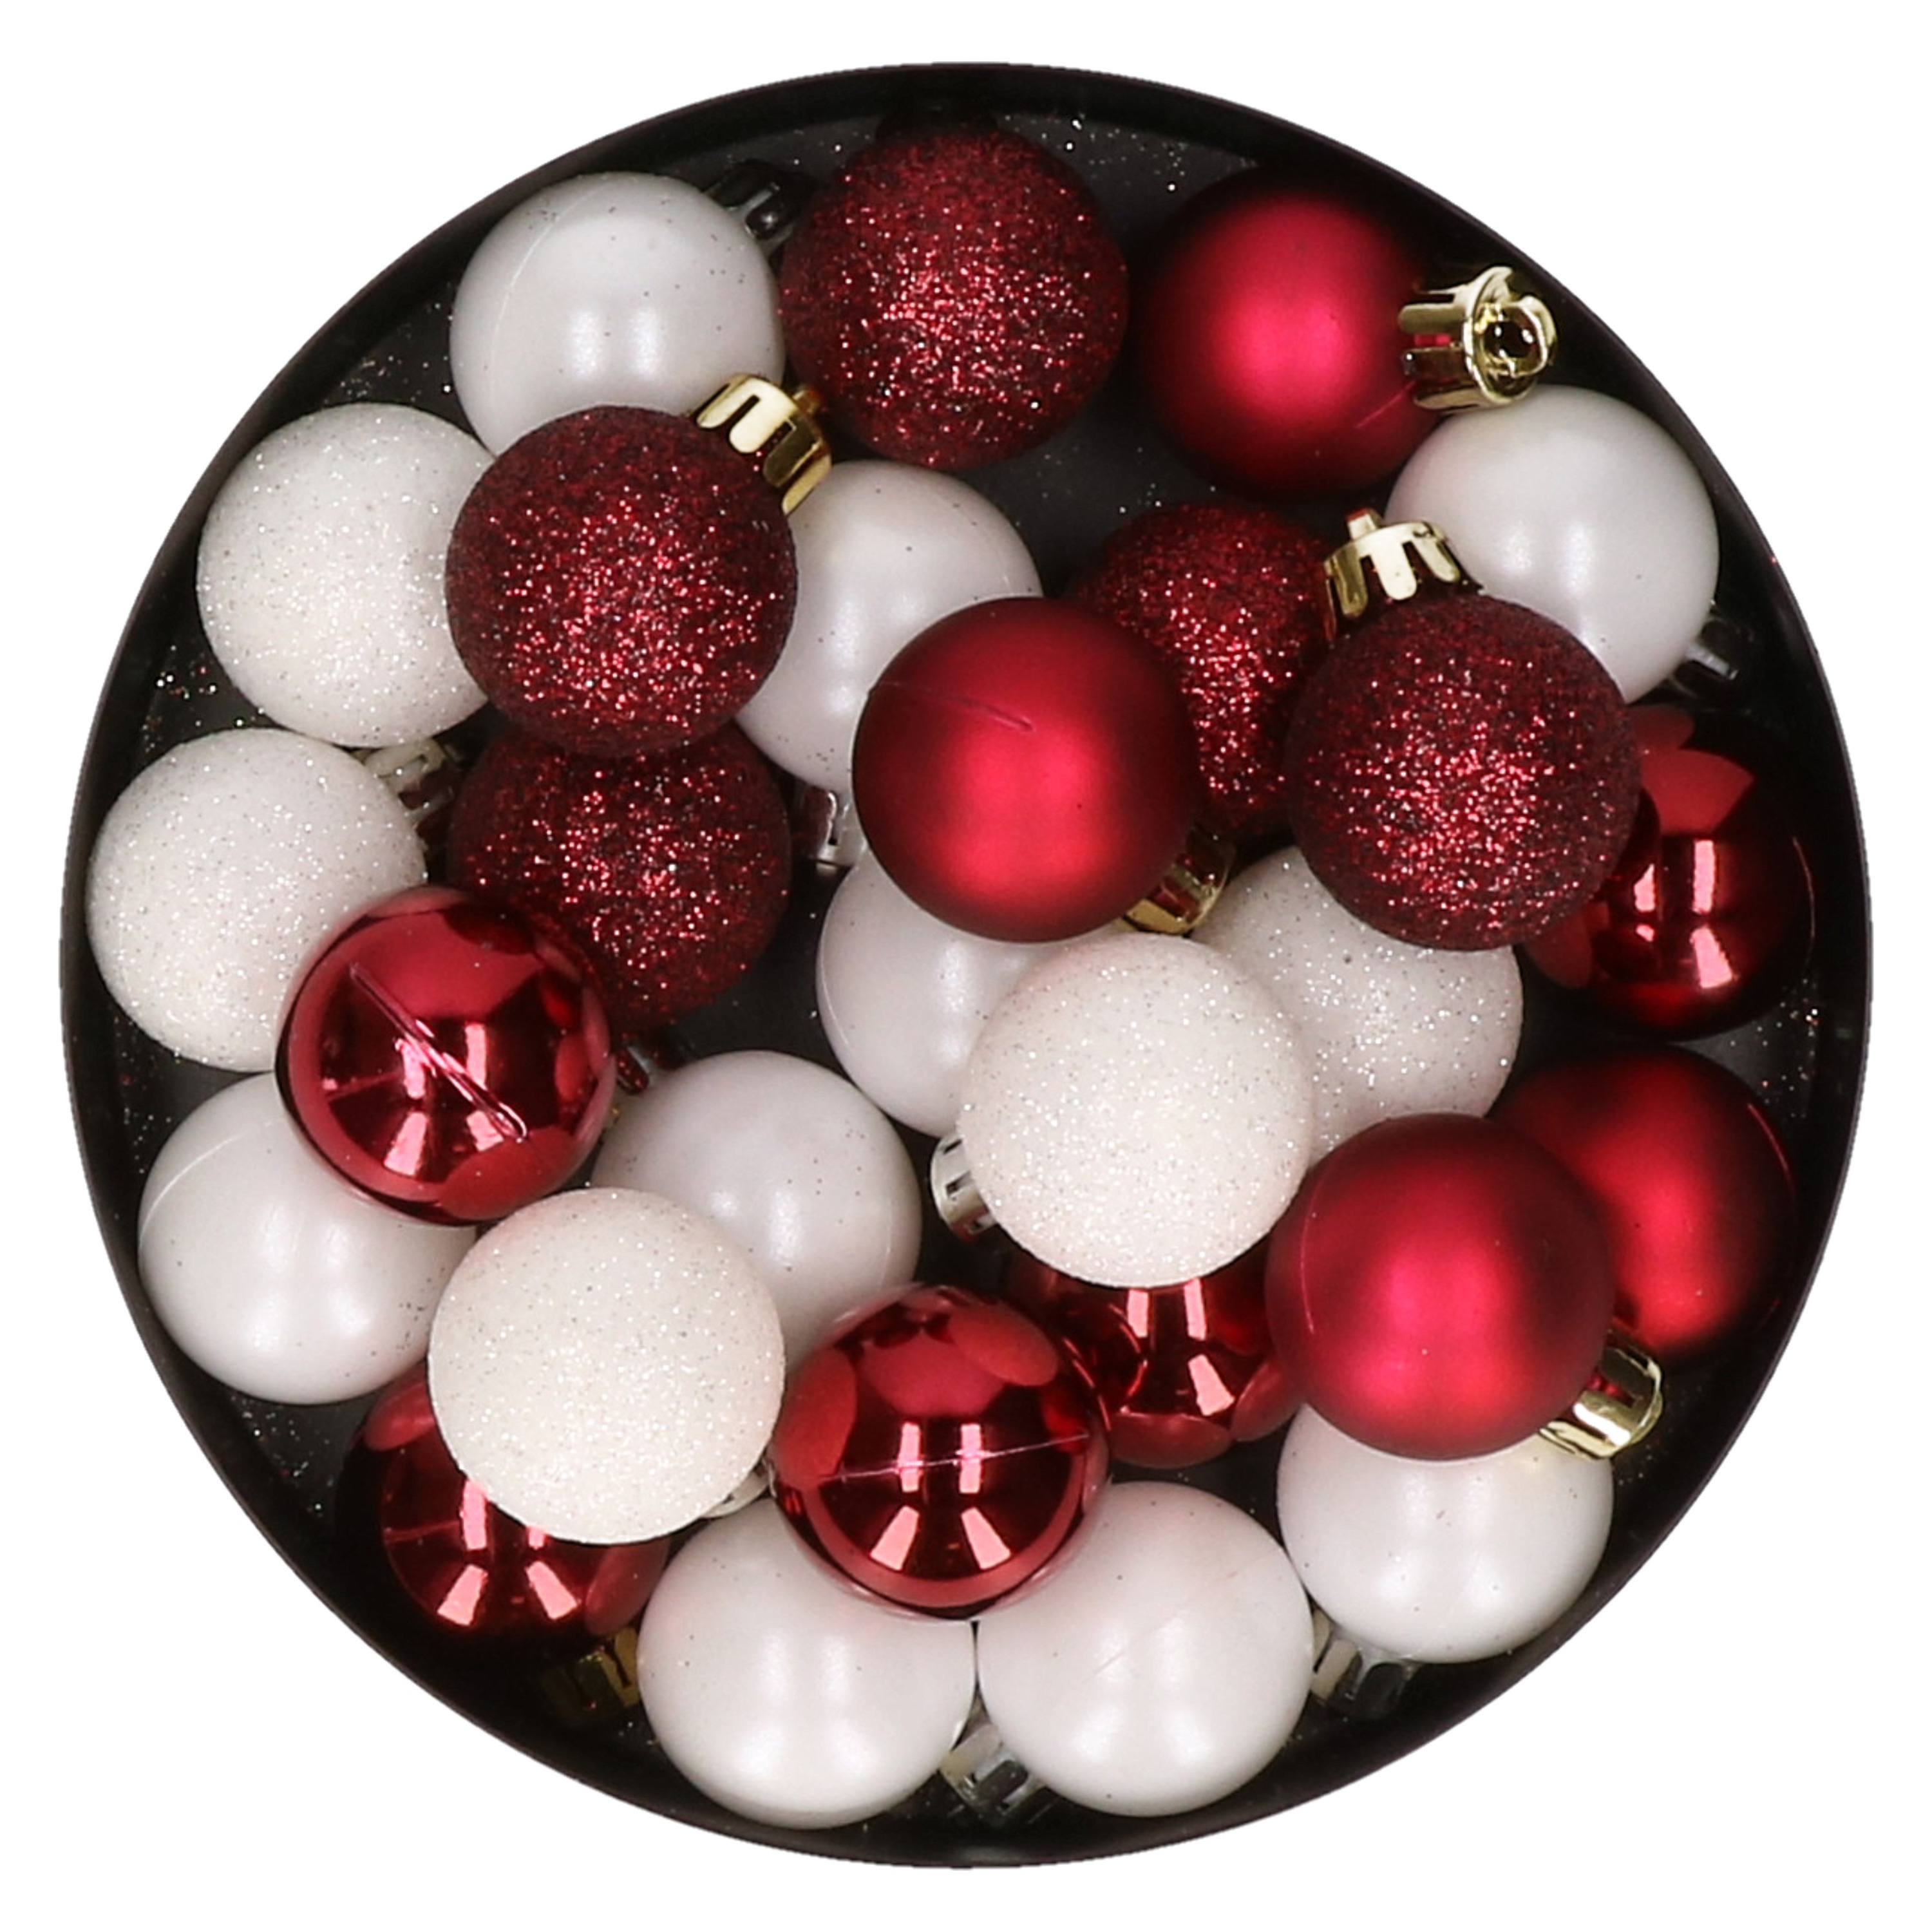 28x stuks kunststof kerstballen donkerrood en wit mix 3 cm